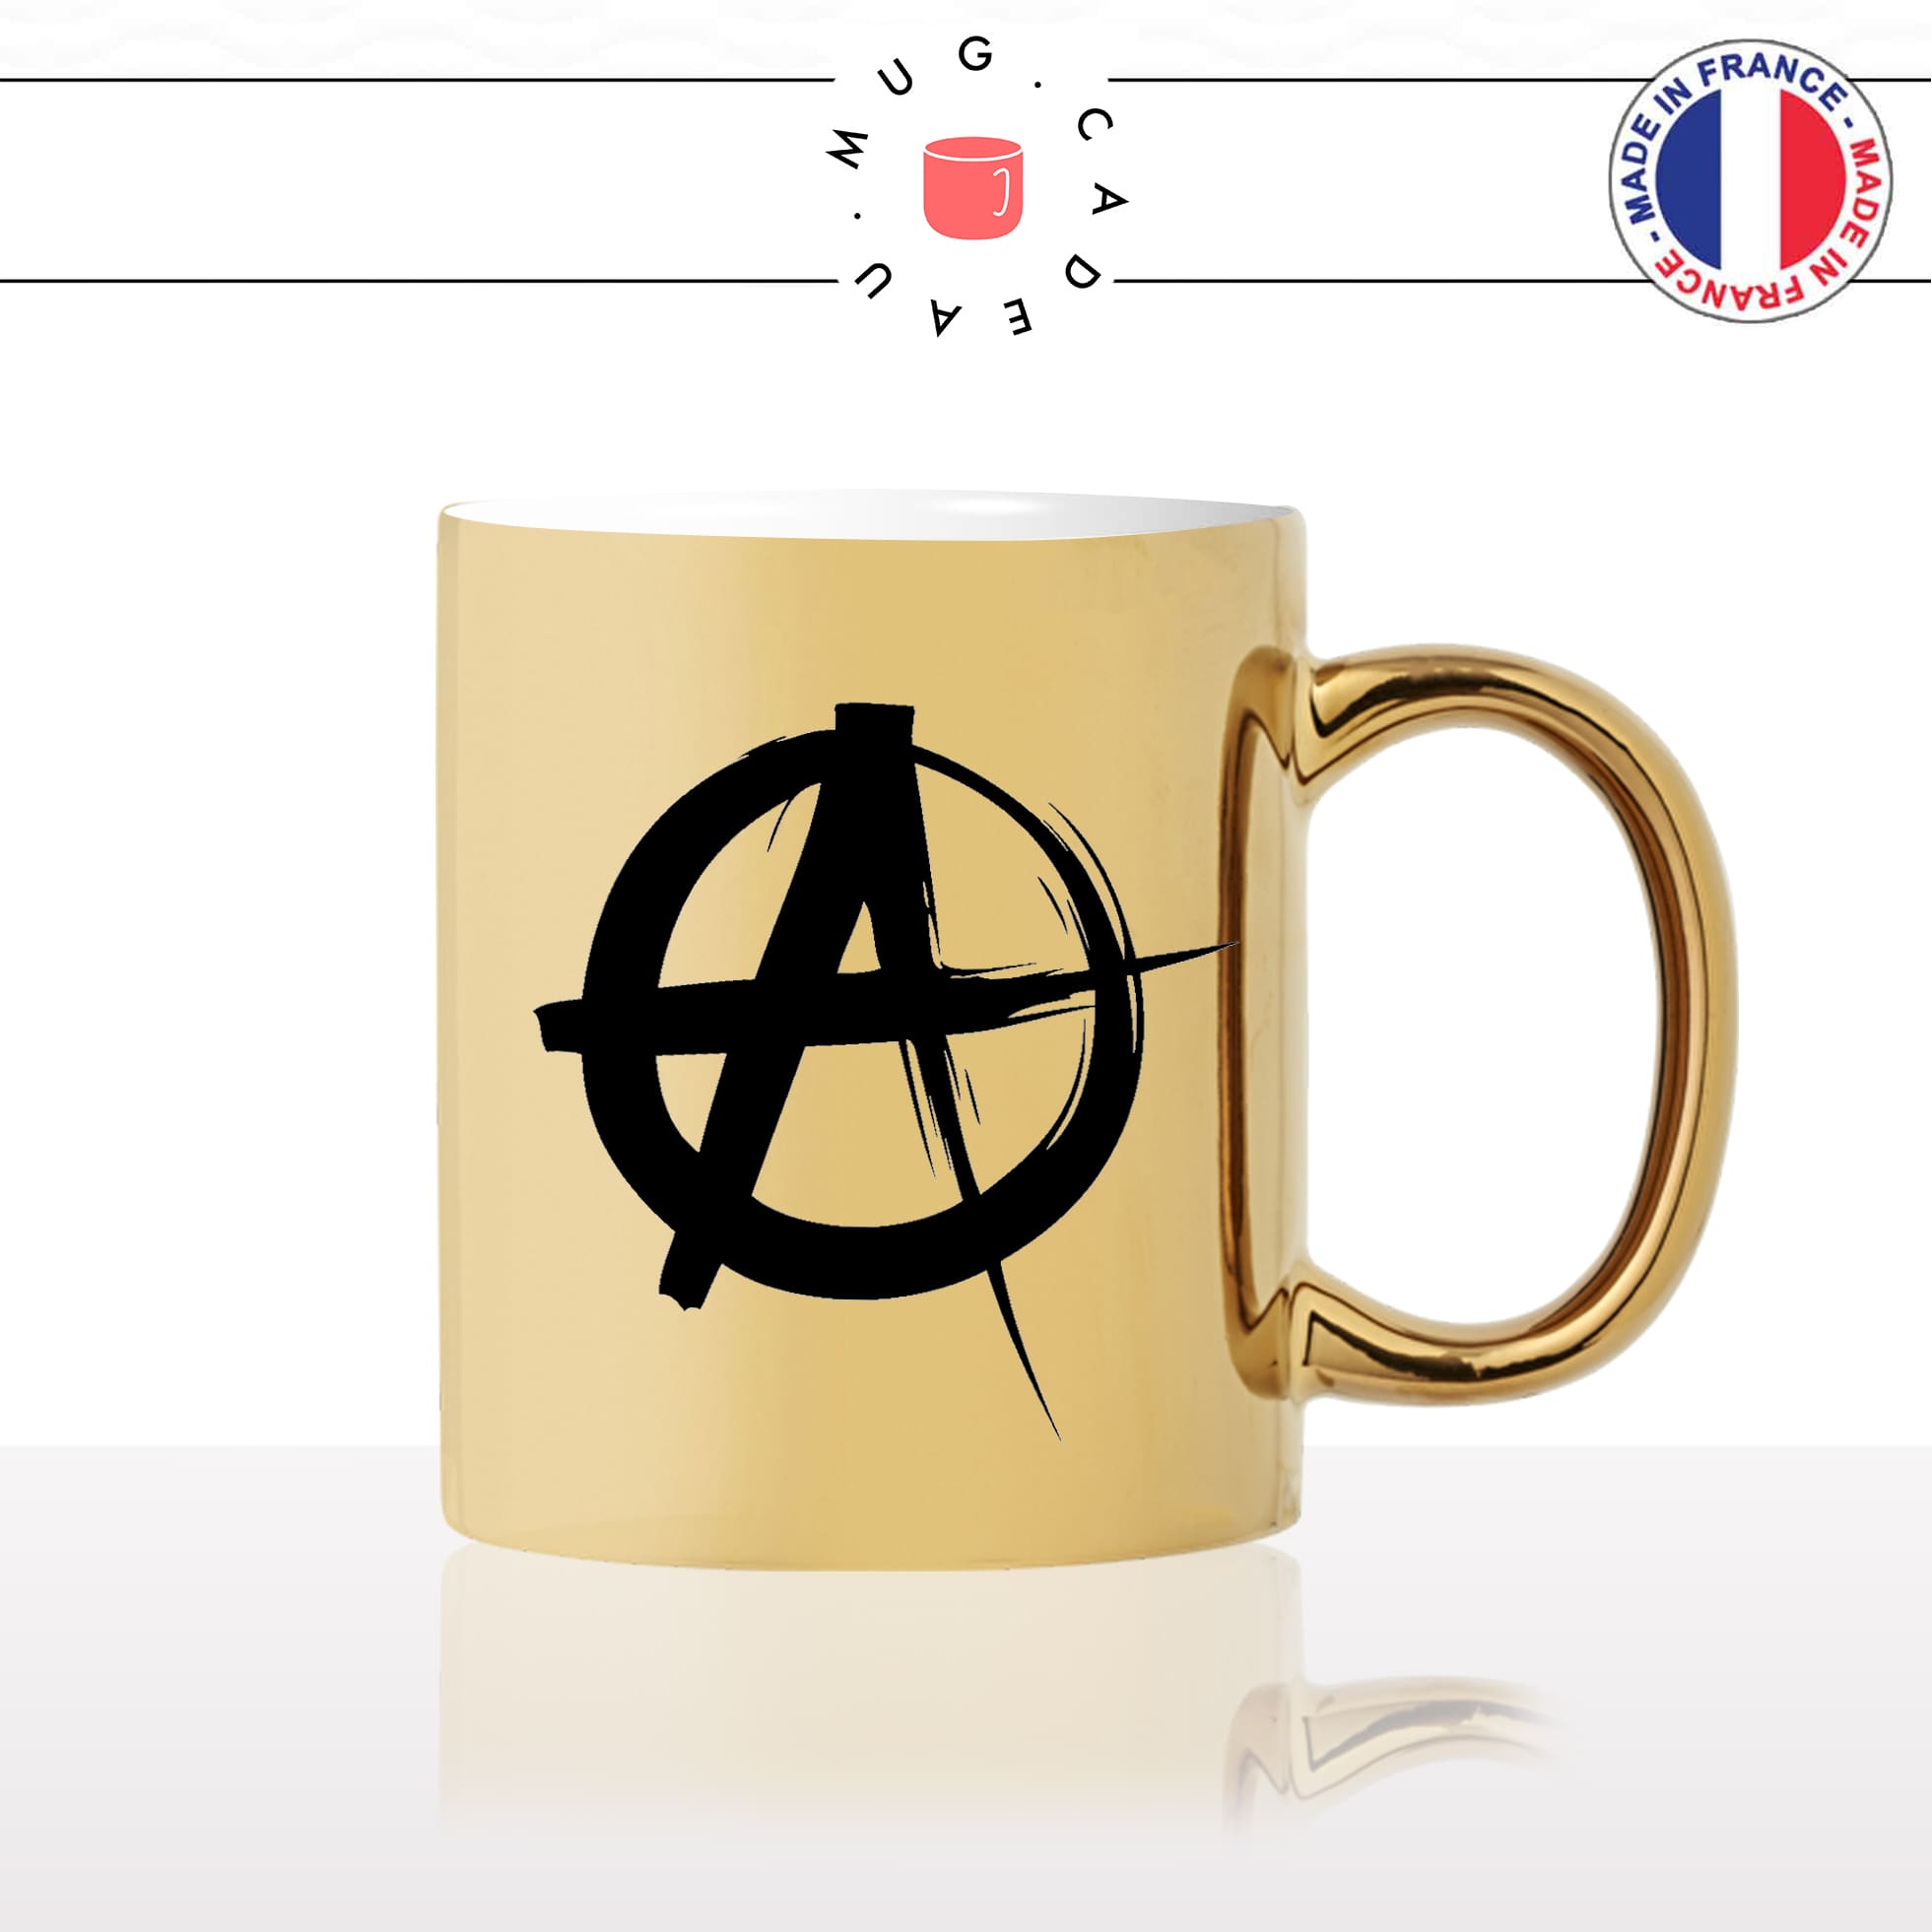 mug-or-doré-gold-tasse-idée-cadeau-personnalisé-anarchiste-anarchy-anarchie-politique-black-blocks-anti-fa-societé-fun-drole-offrir-original-2